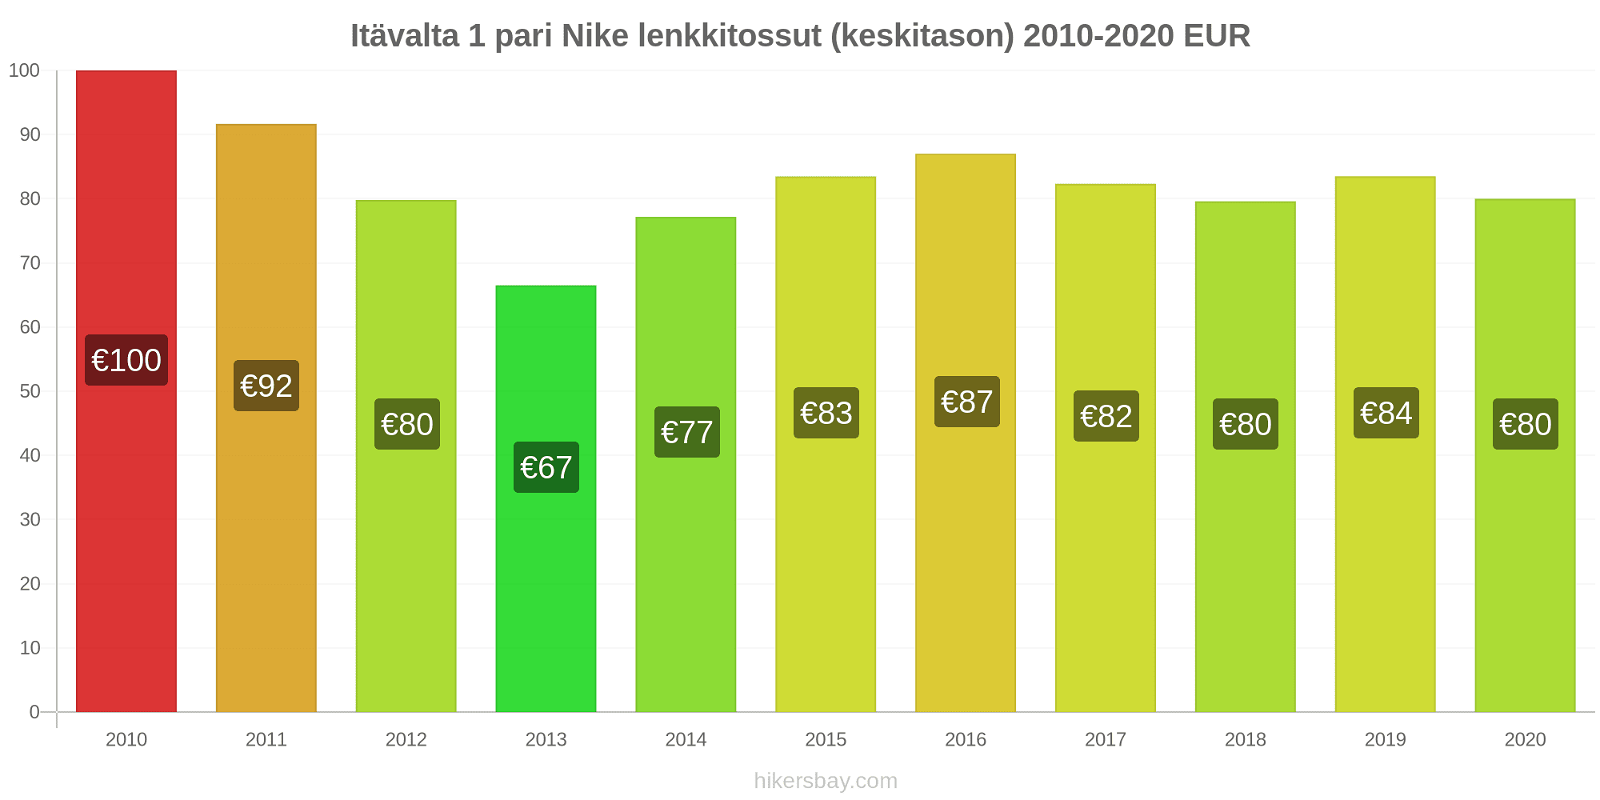 Itävalta hintojen muutokset 1 pari Nike lenkkitossut (keskitason) hikersbay.com